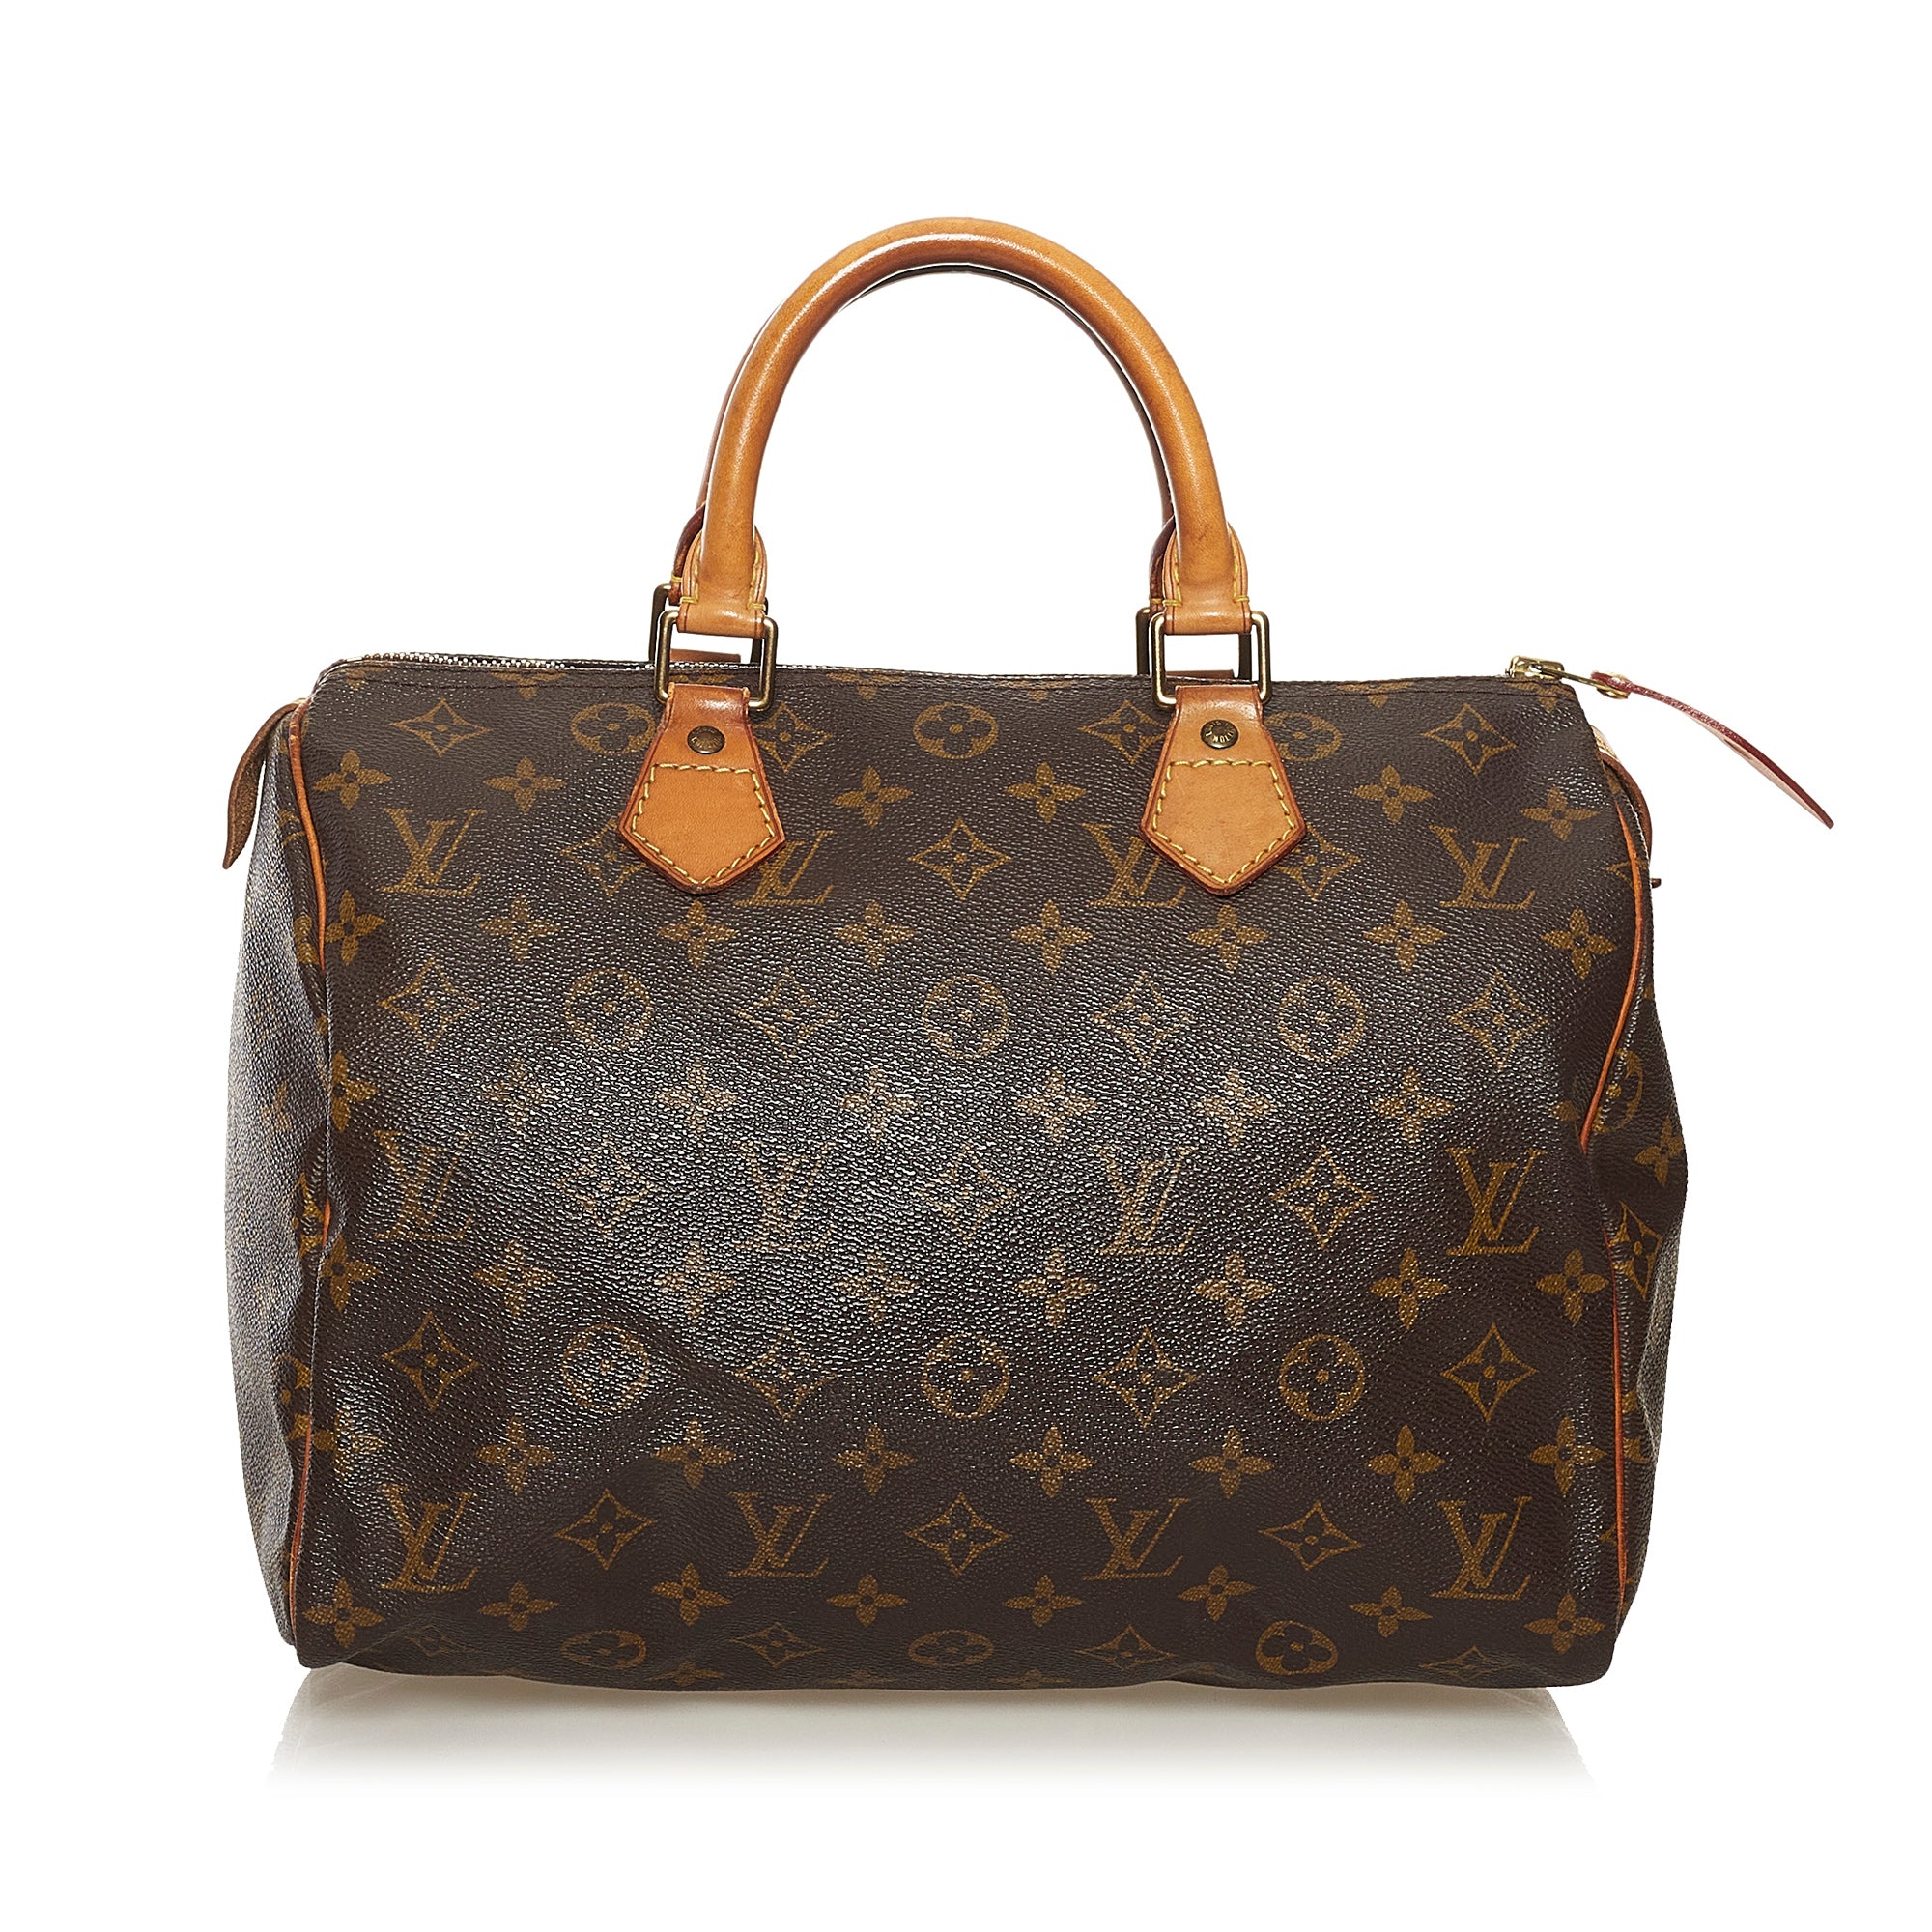 PRELOVED Louis Vuitton Monogram Speedy 30 Bag SP0928 052923 $100 OFF –  KimmieBBags LLC